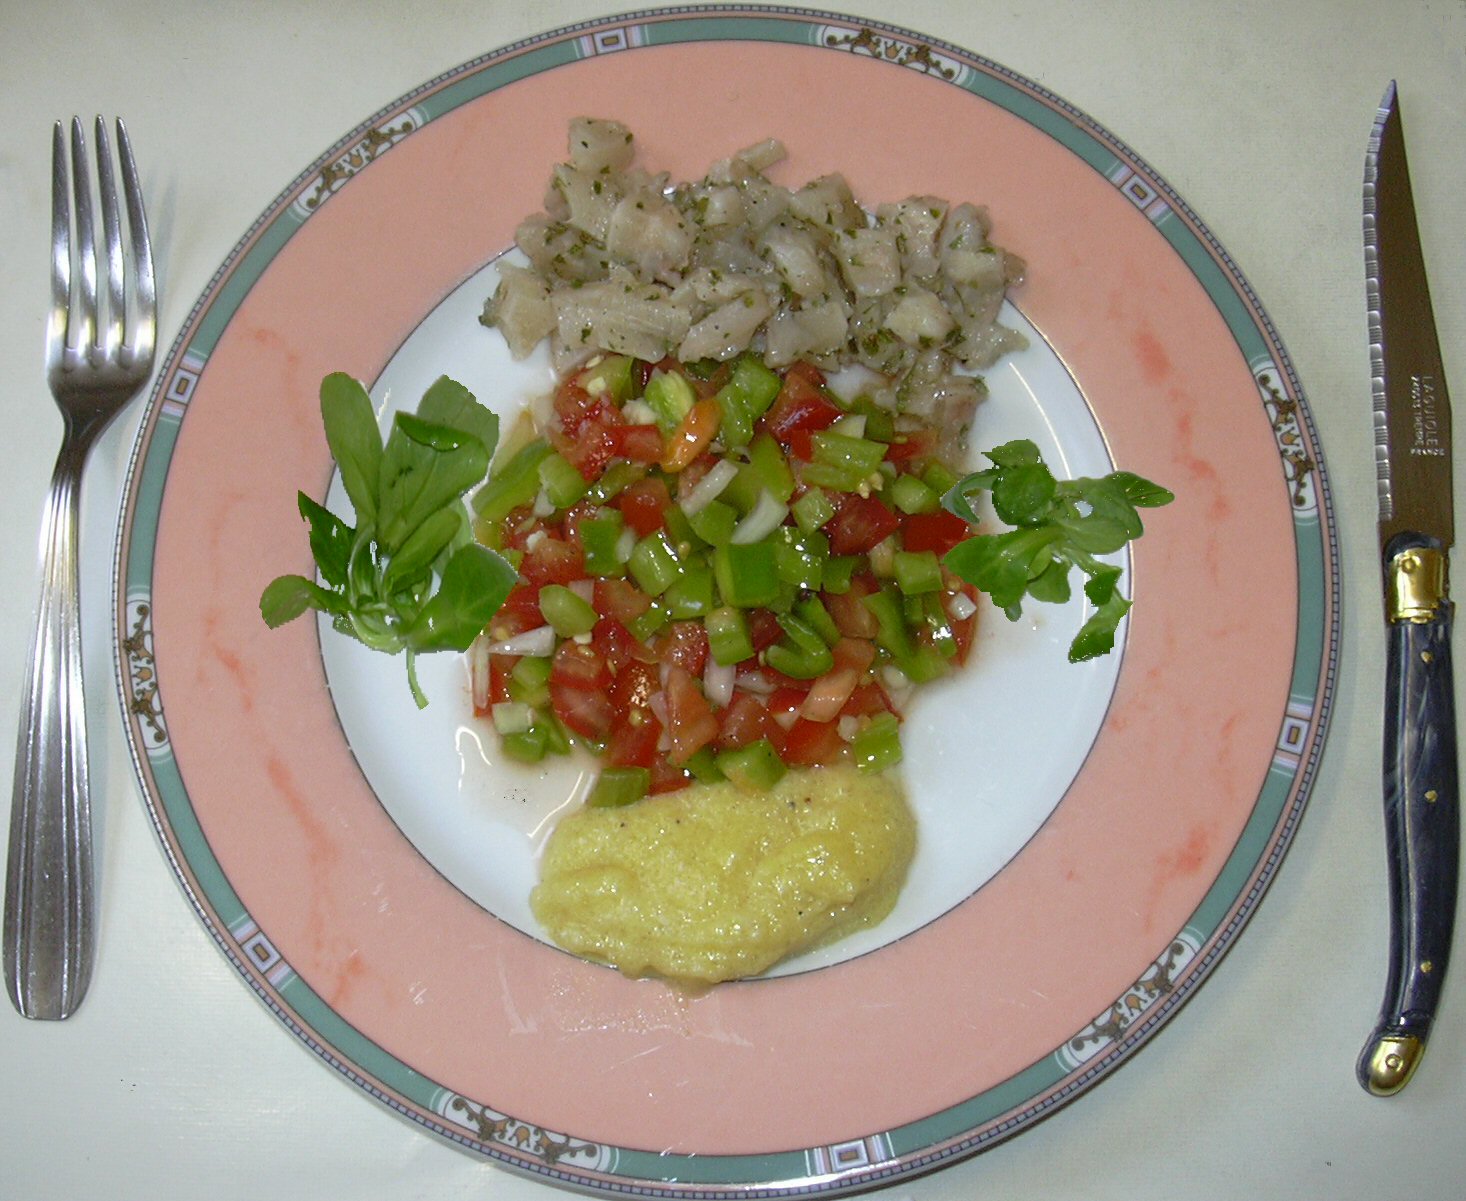 ラプンツェルと呼ばれる野菜を左右に添えたサラダの画像です。